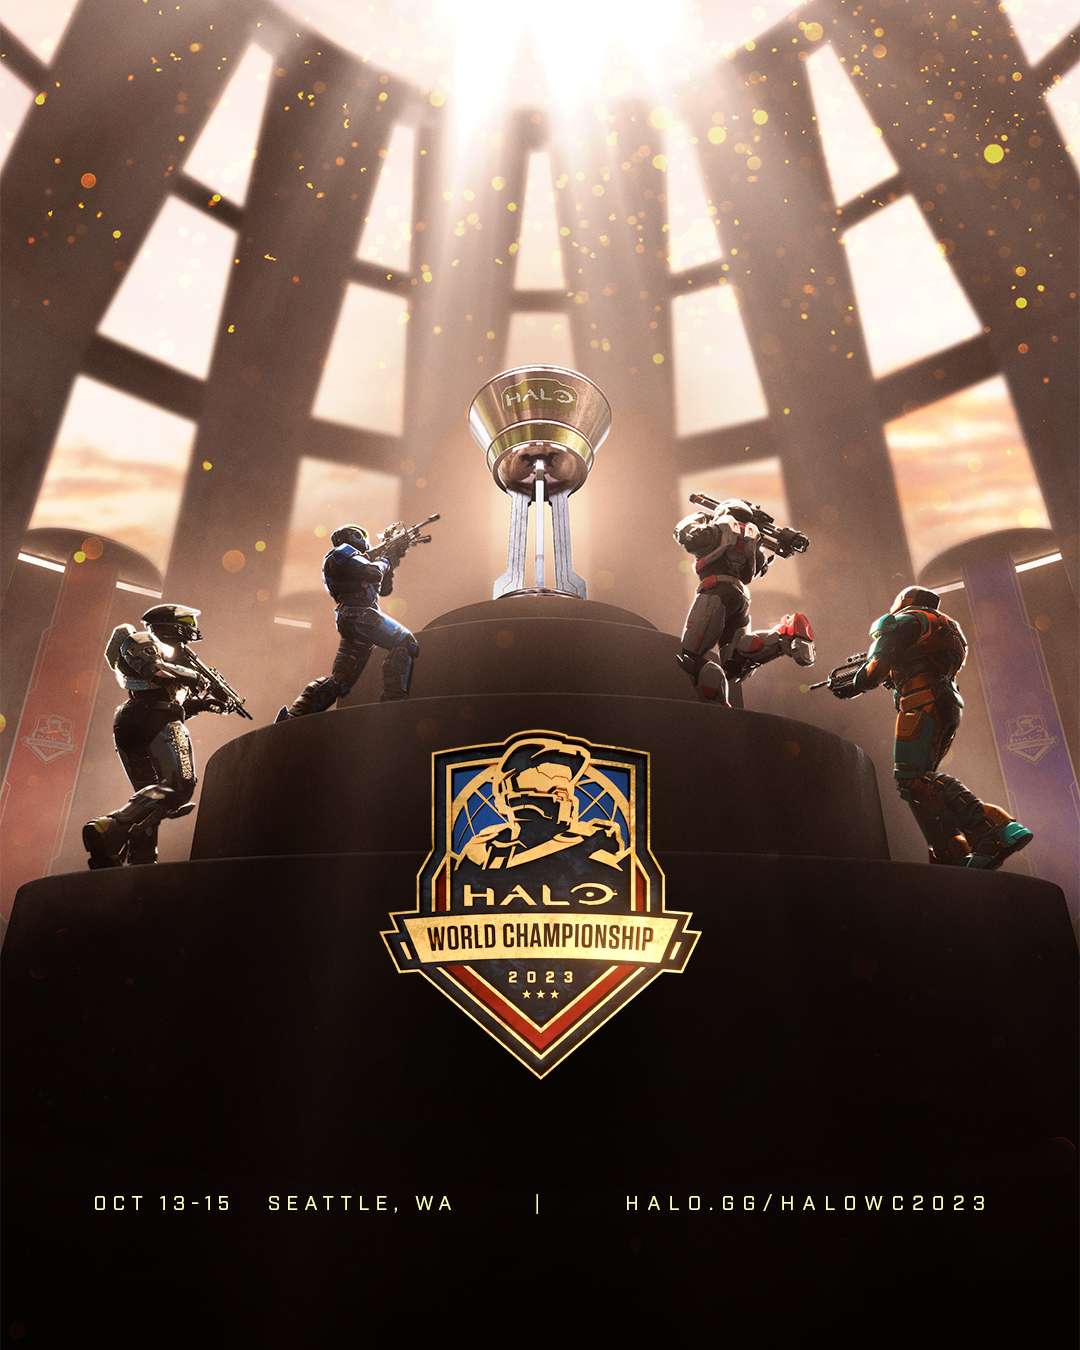 Halo World Championship 2023: Halo World Championship 2023